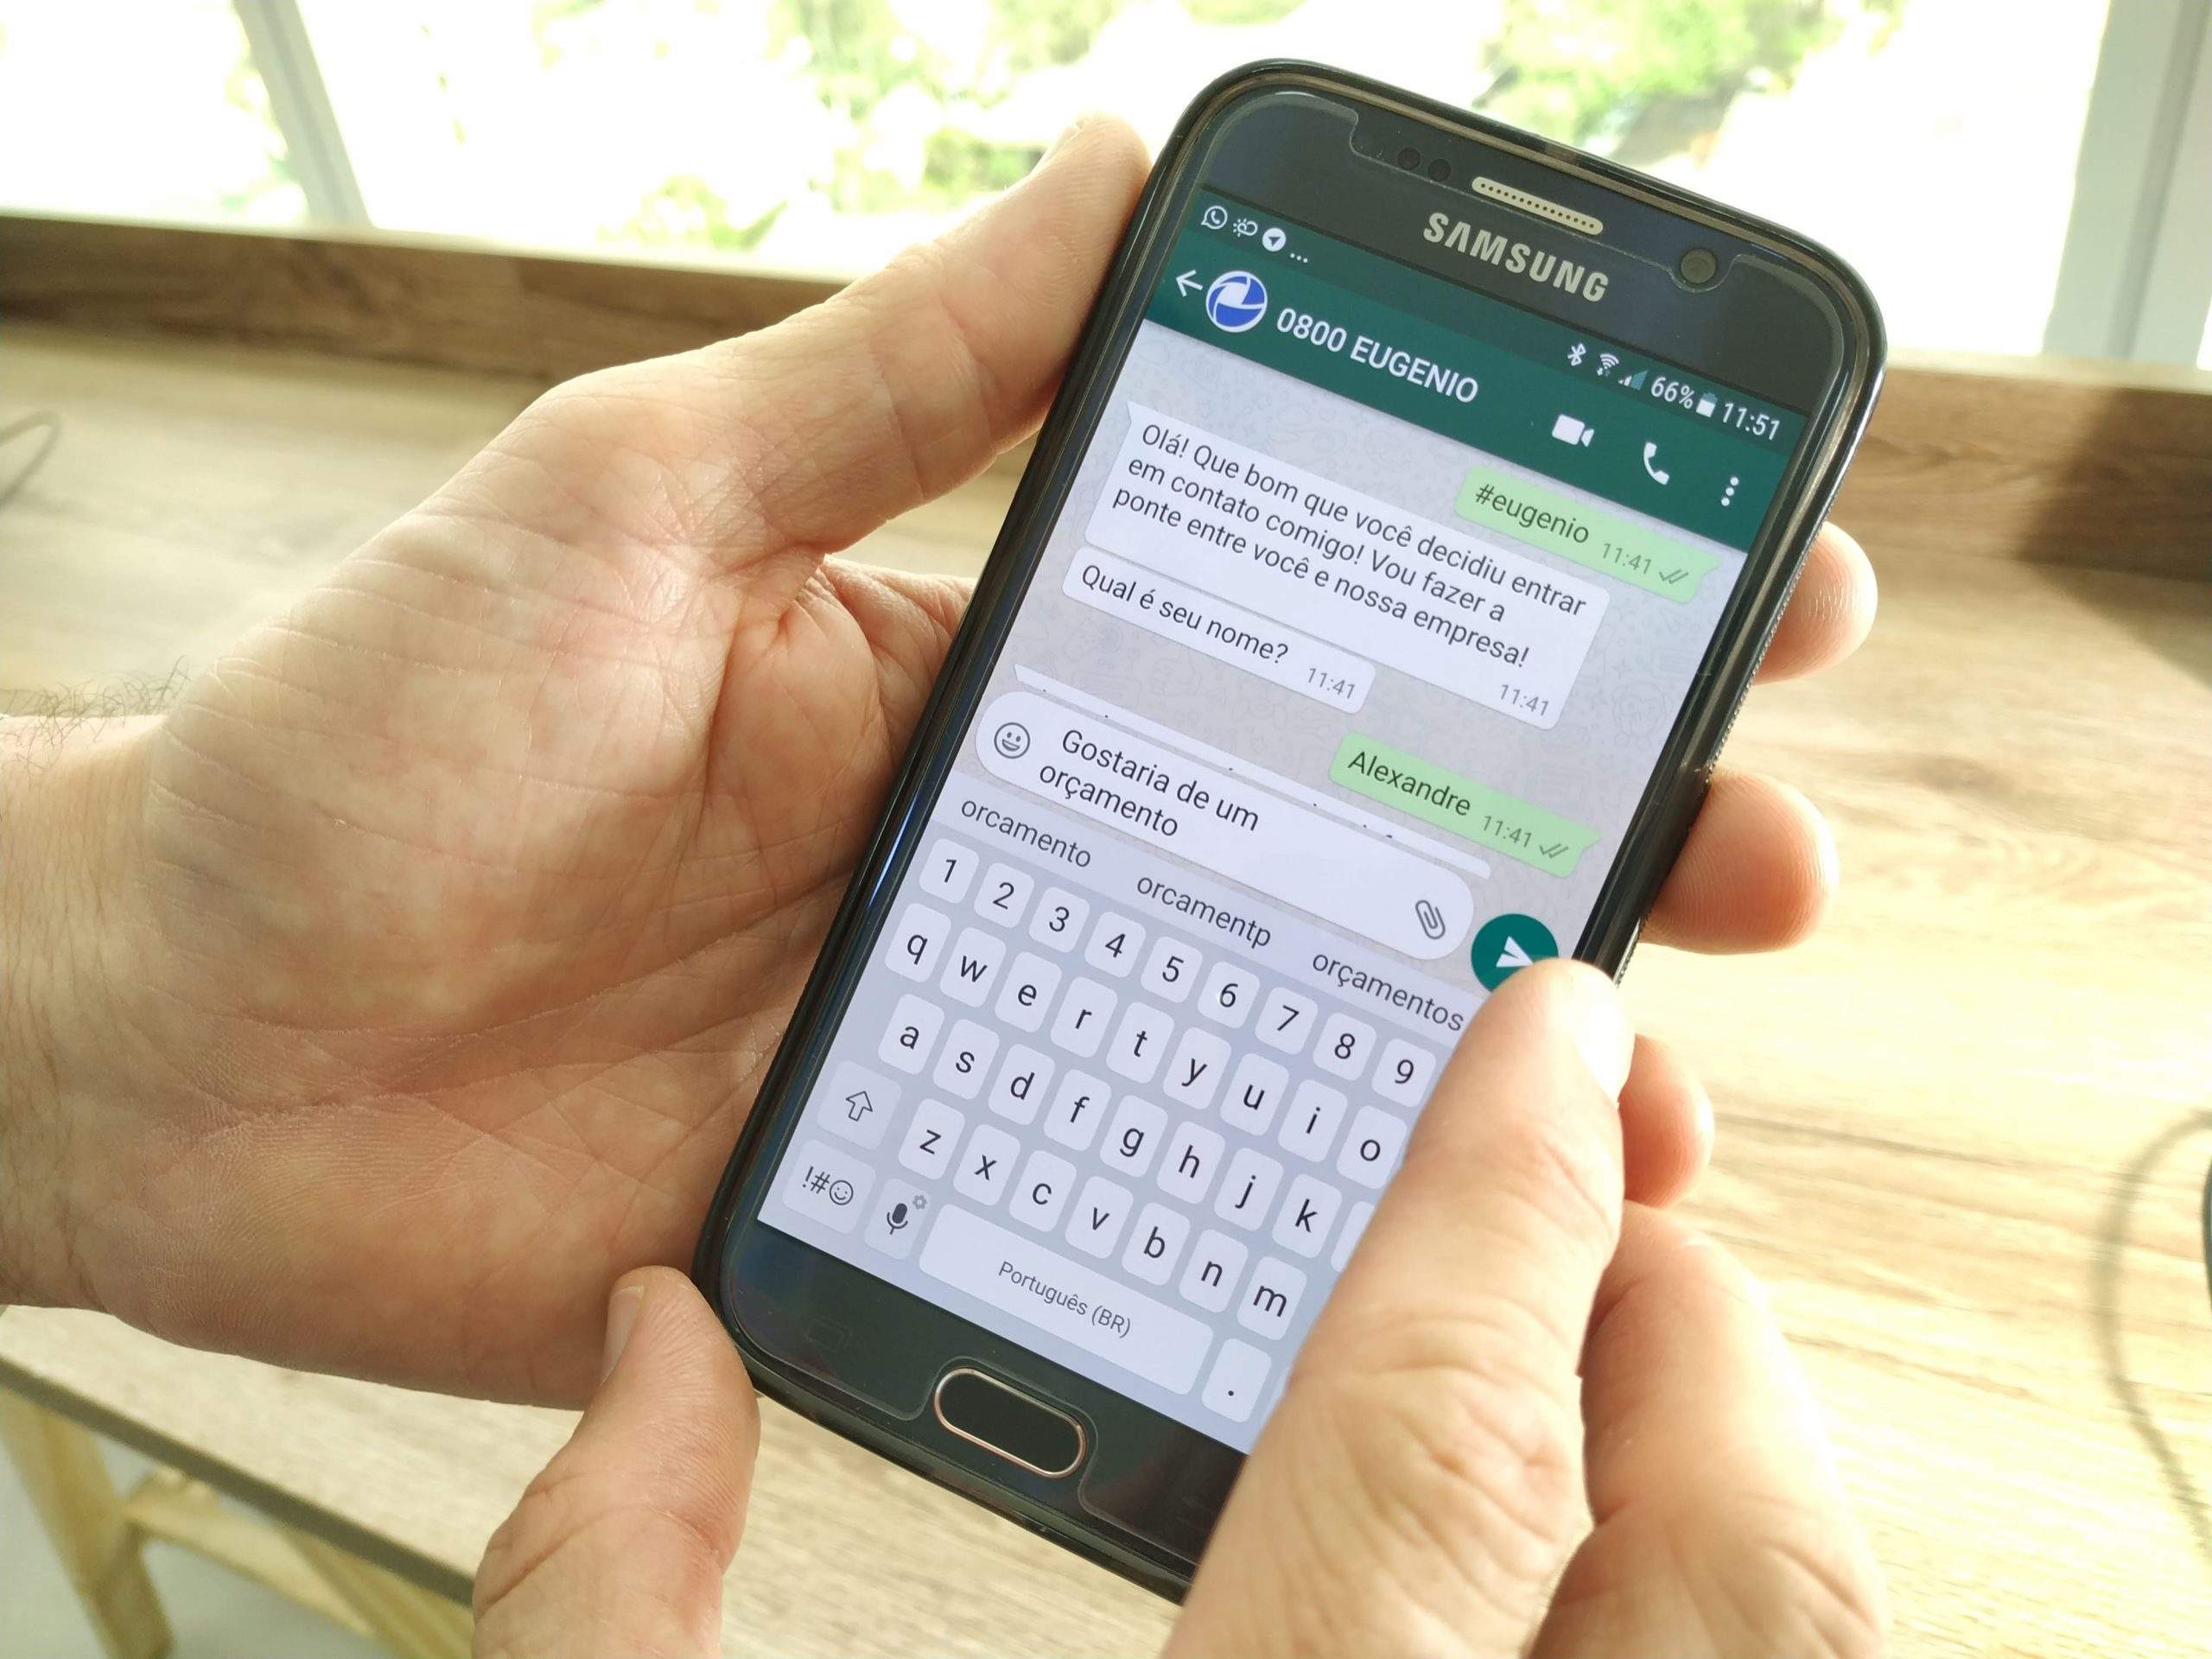 0800EUGENIO, primeiro assistente virtual de atendimento compartilhado para WhatsApp com versão gratuita